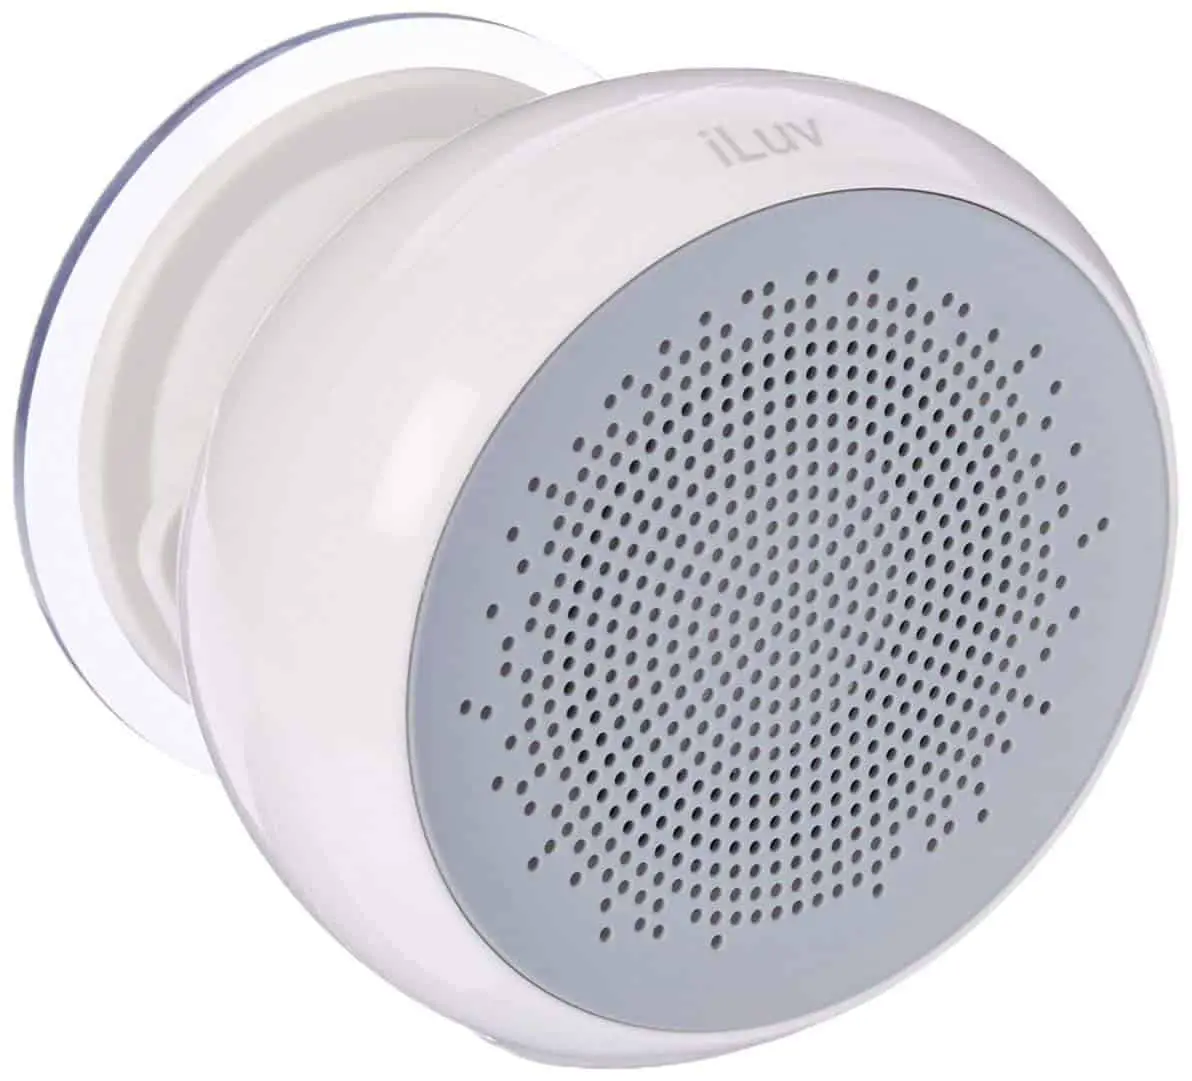 ILUV Aud Shower Bluetooth Speaker